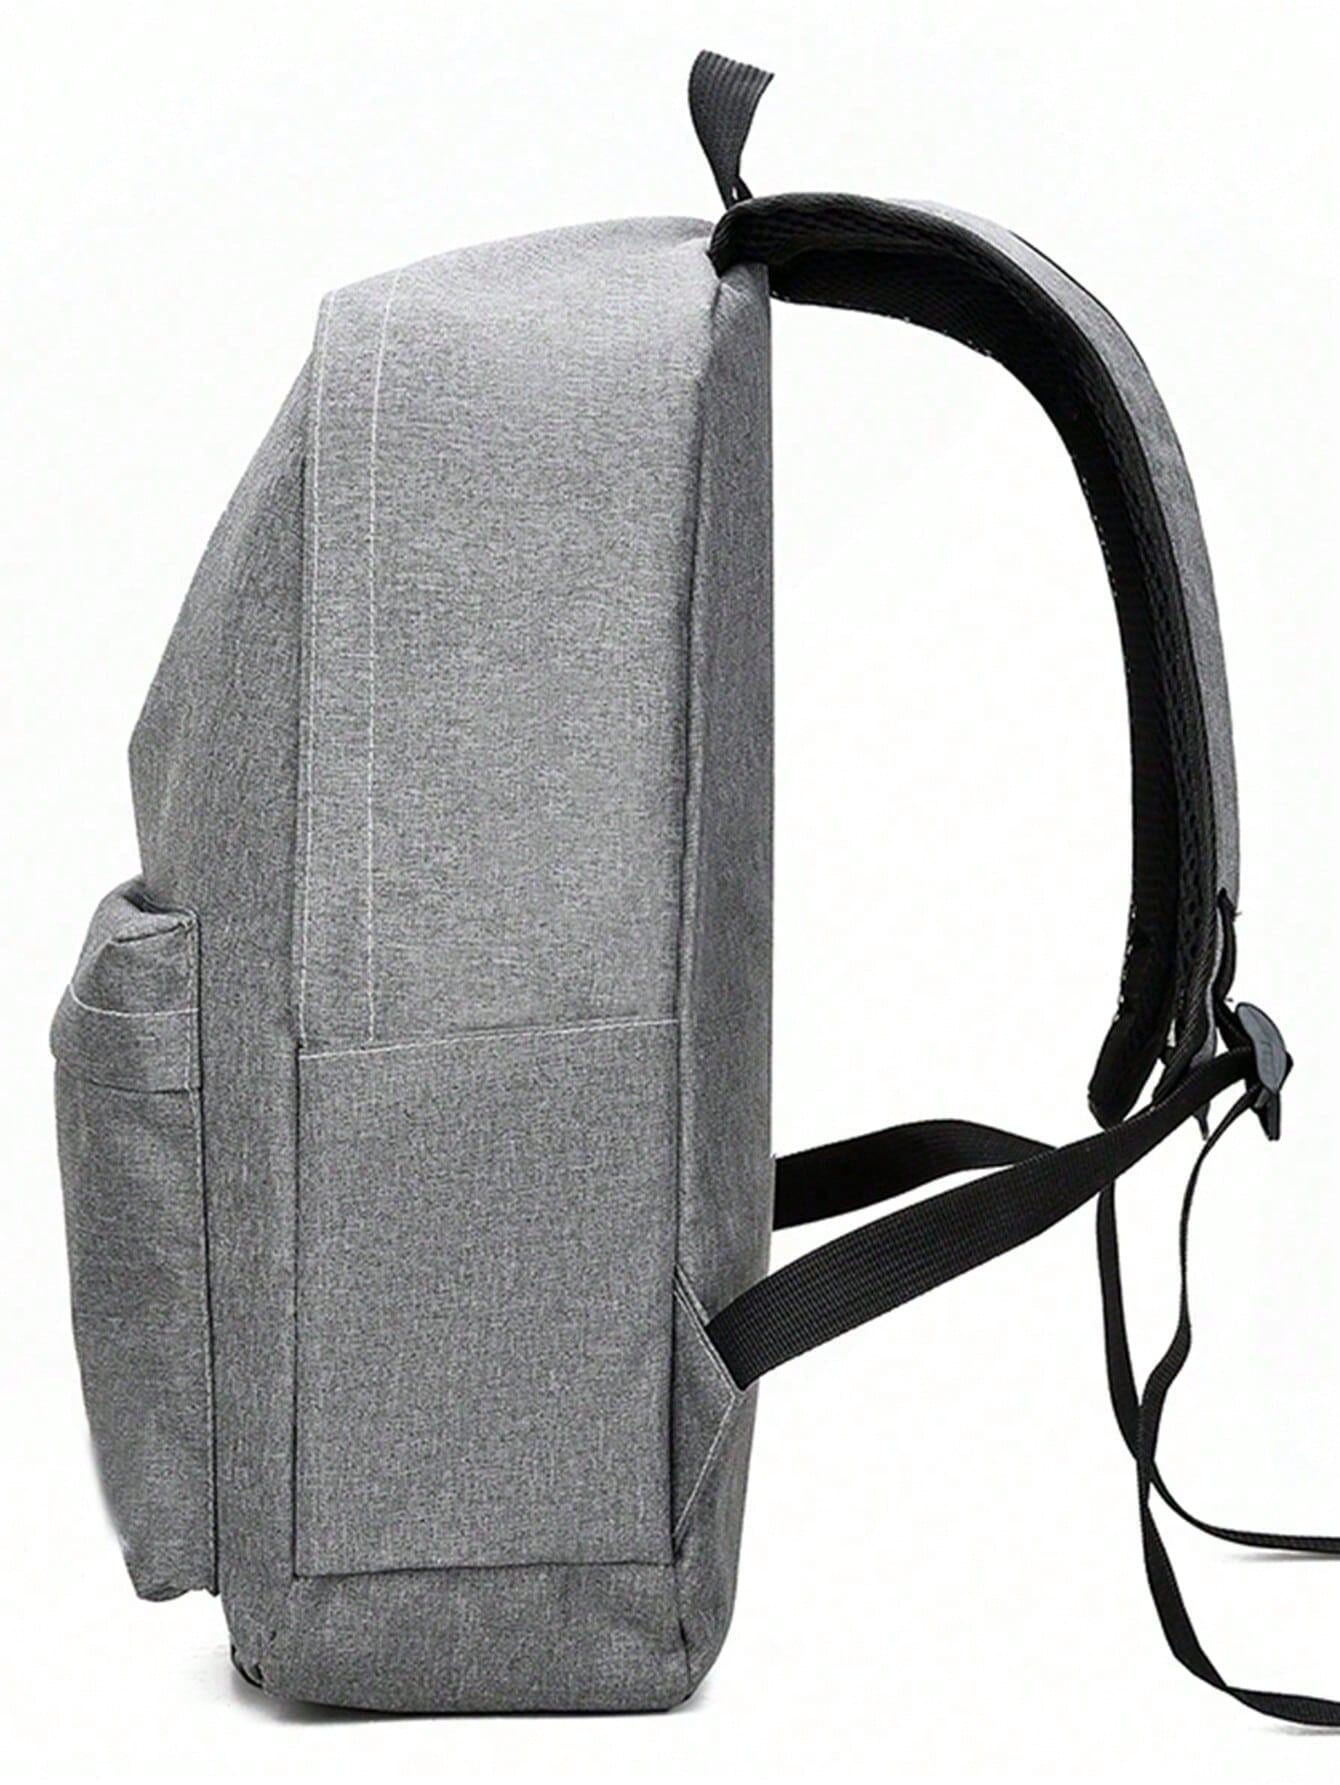 Рюкзак мужской рюкзак большой емкости рюкзак для школьников рюкзак нейлоновый рюкзак новый старший, серый мужской минималистичный рюкзак большой емкости черный